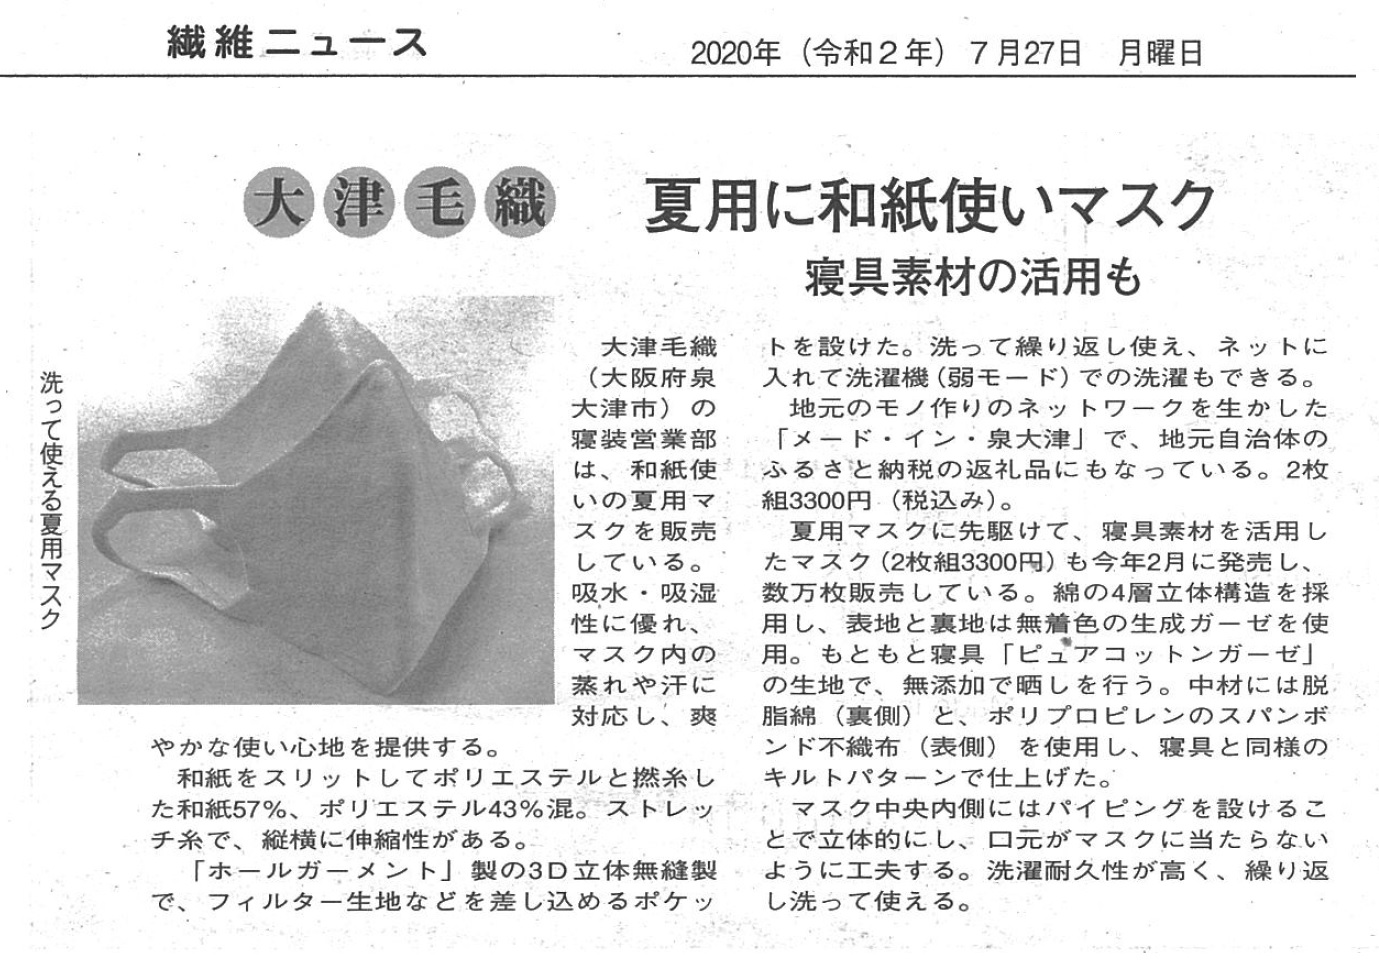 繊維ニュースへ掲載されました「夏用に和紙使いマスク」 | 大津毛織株式会社